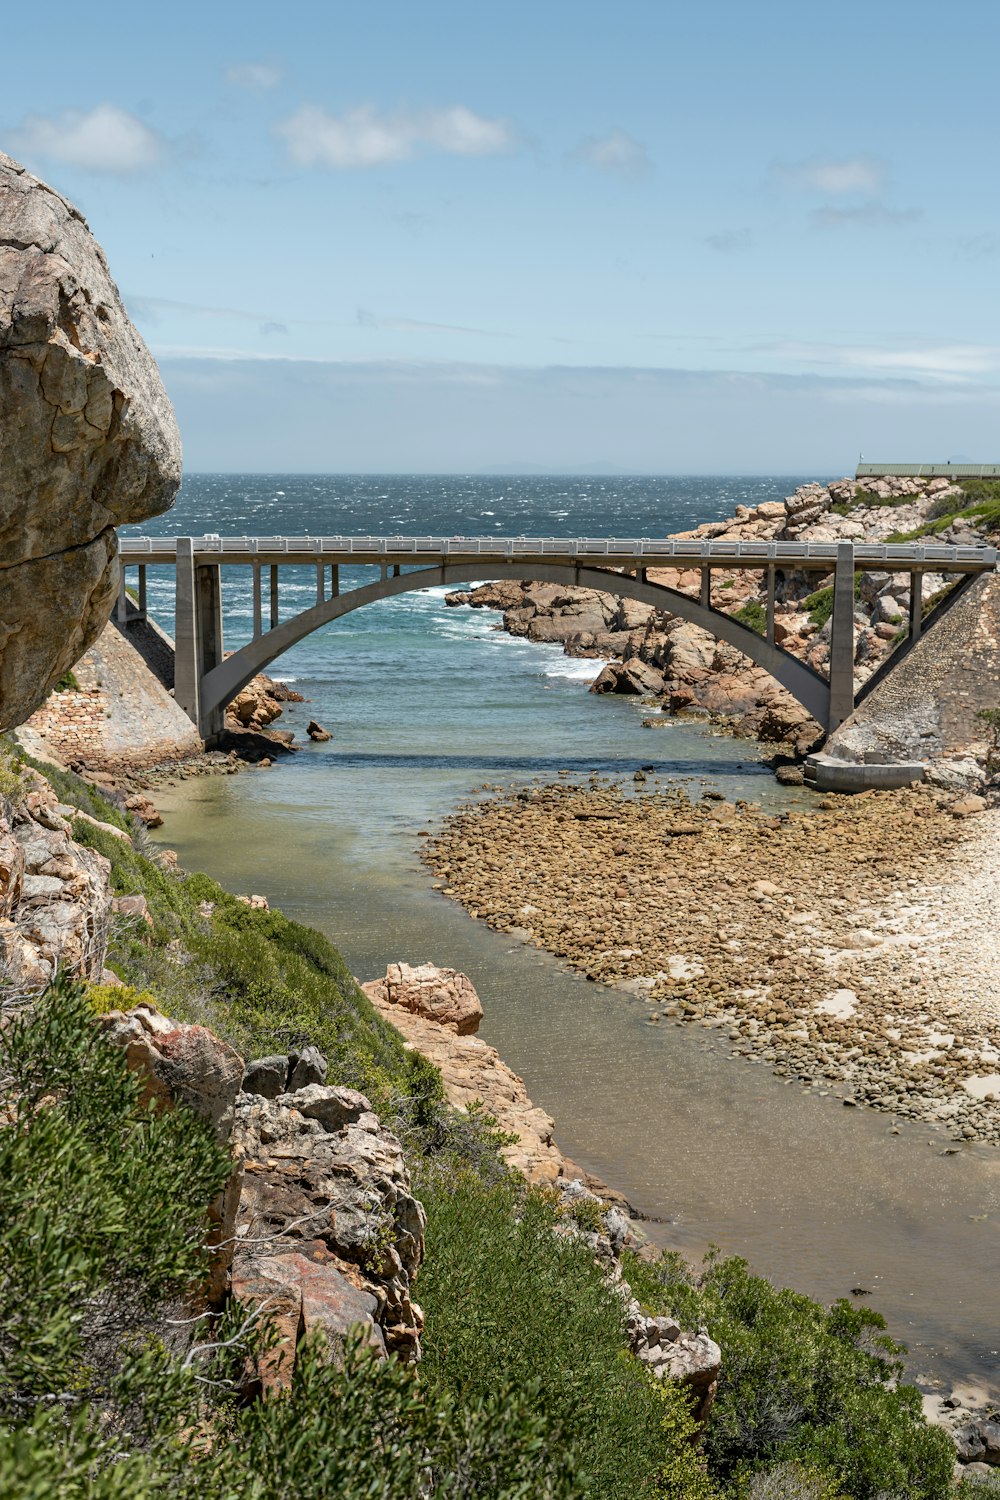 Puente de metal gris sobre el mar durante el día